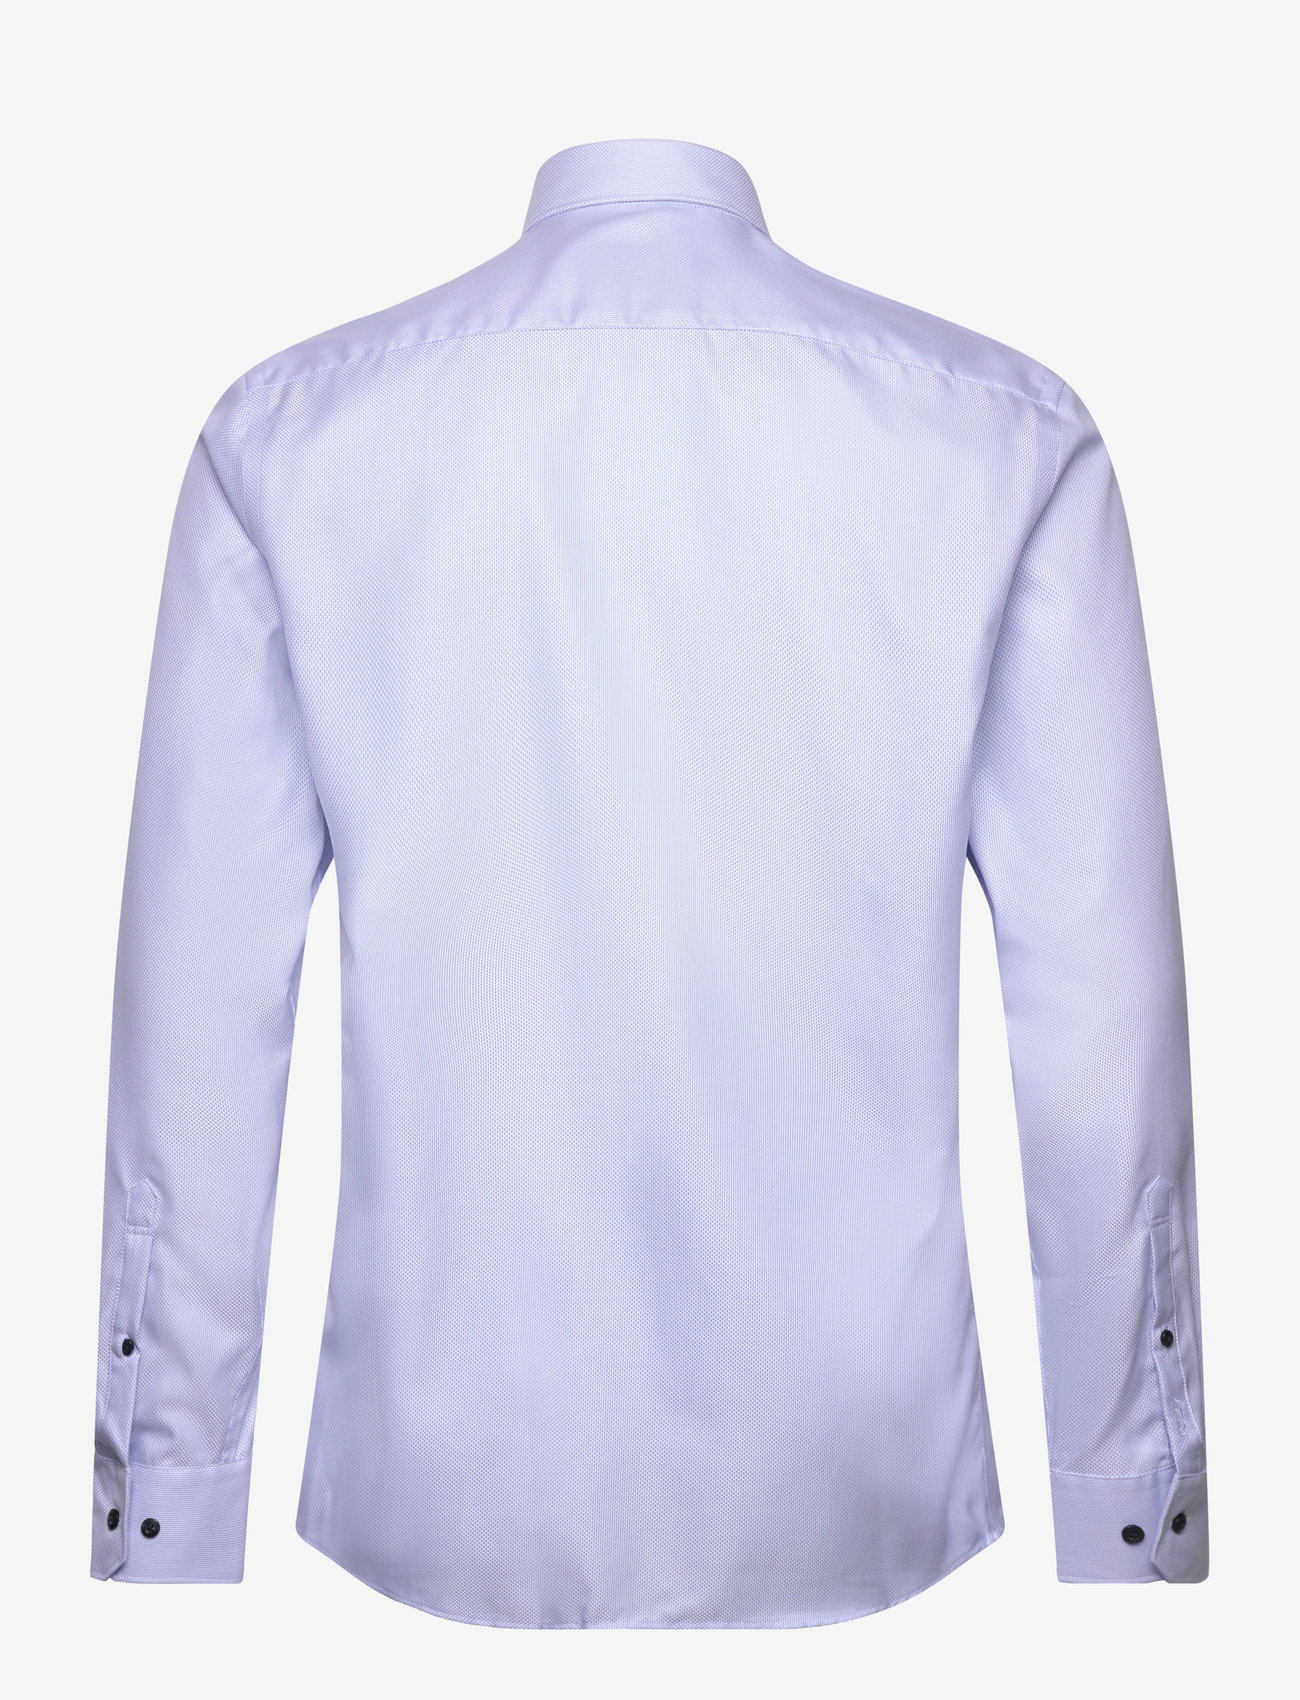 Lindbergh Black - 1927: Structure shirt WF L/S - penskjorter - light blue - 1